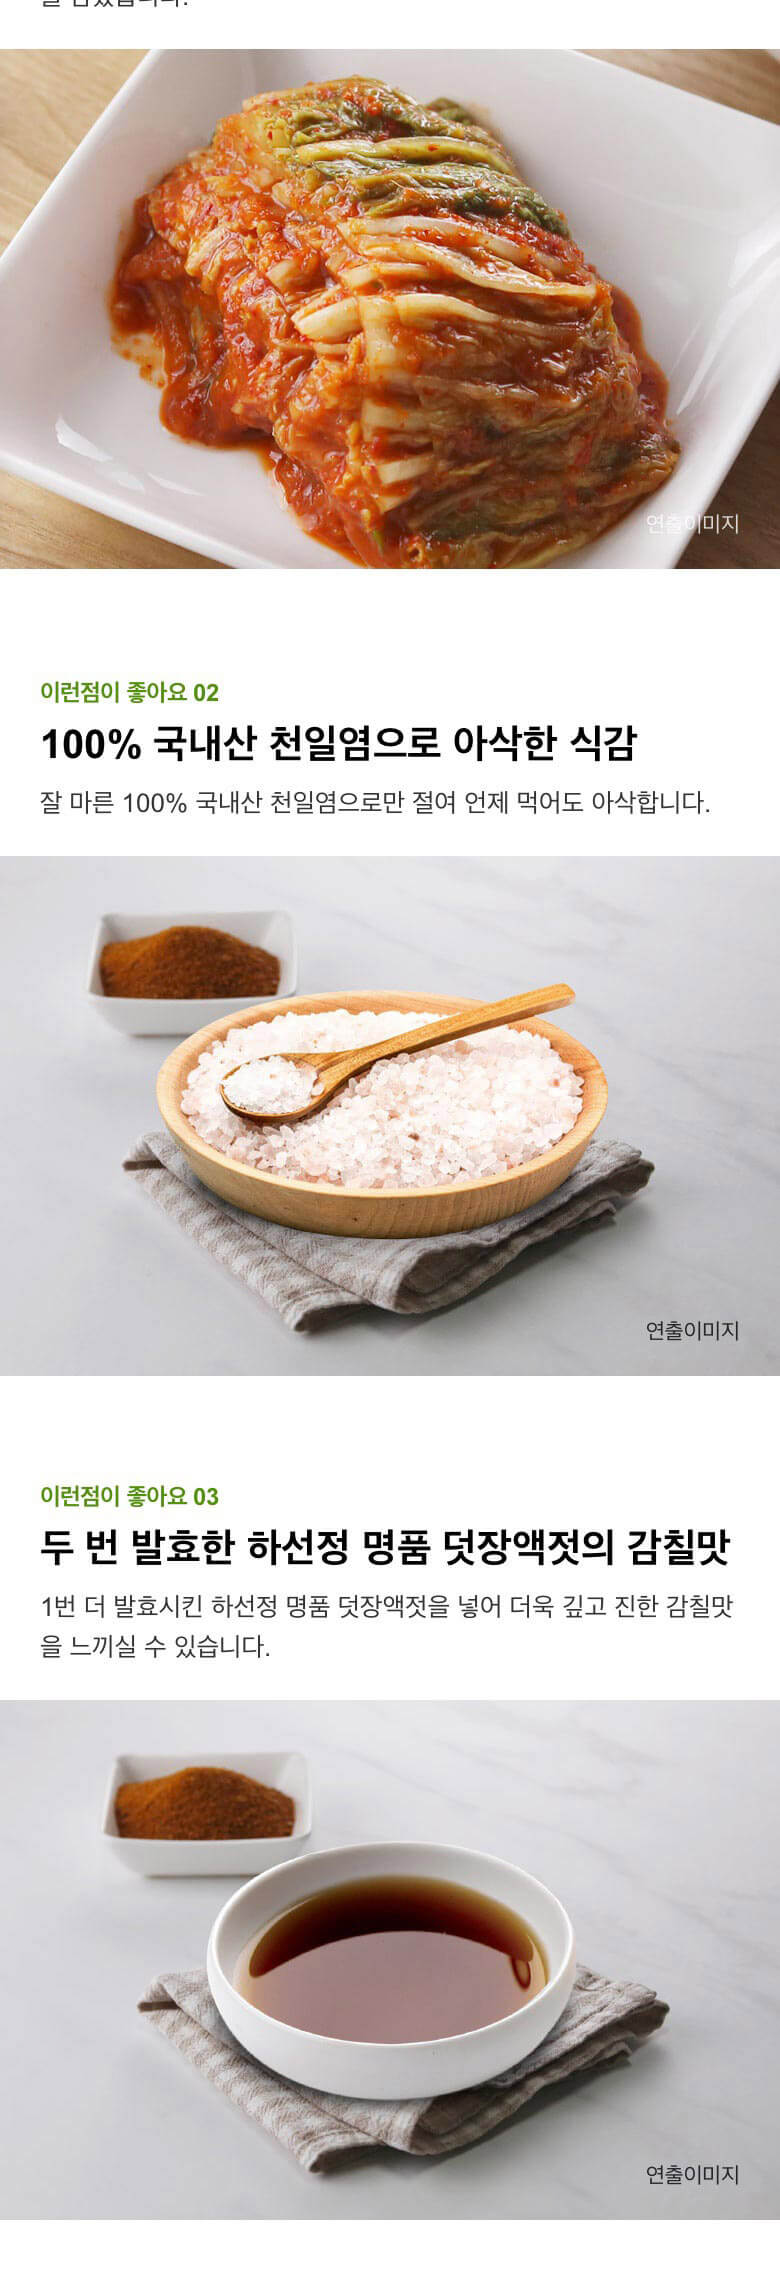 韓國食品-[CJ] 비비고 맛김치 500g